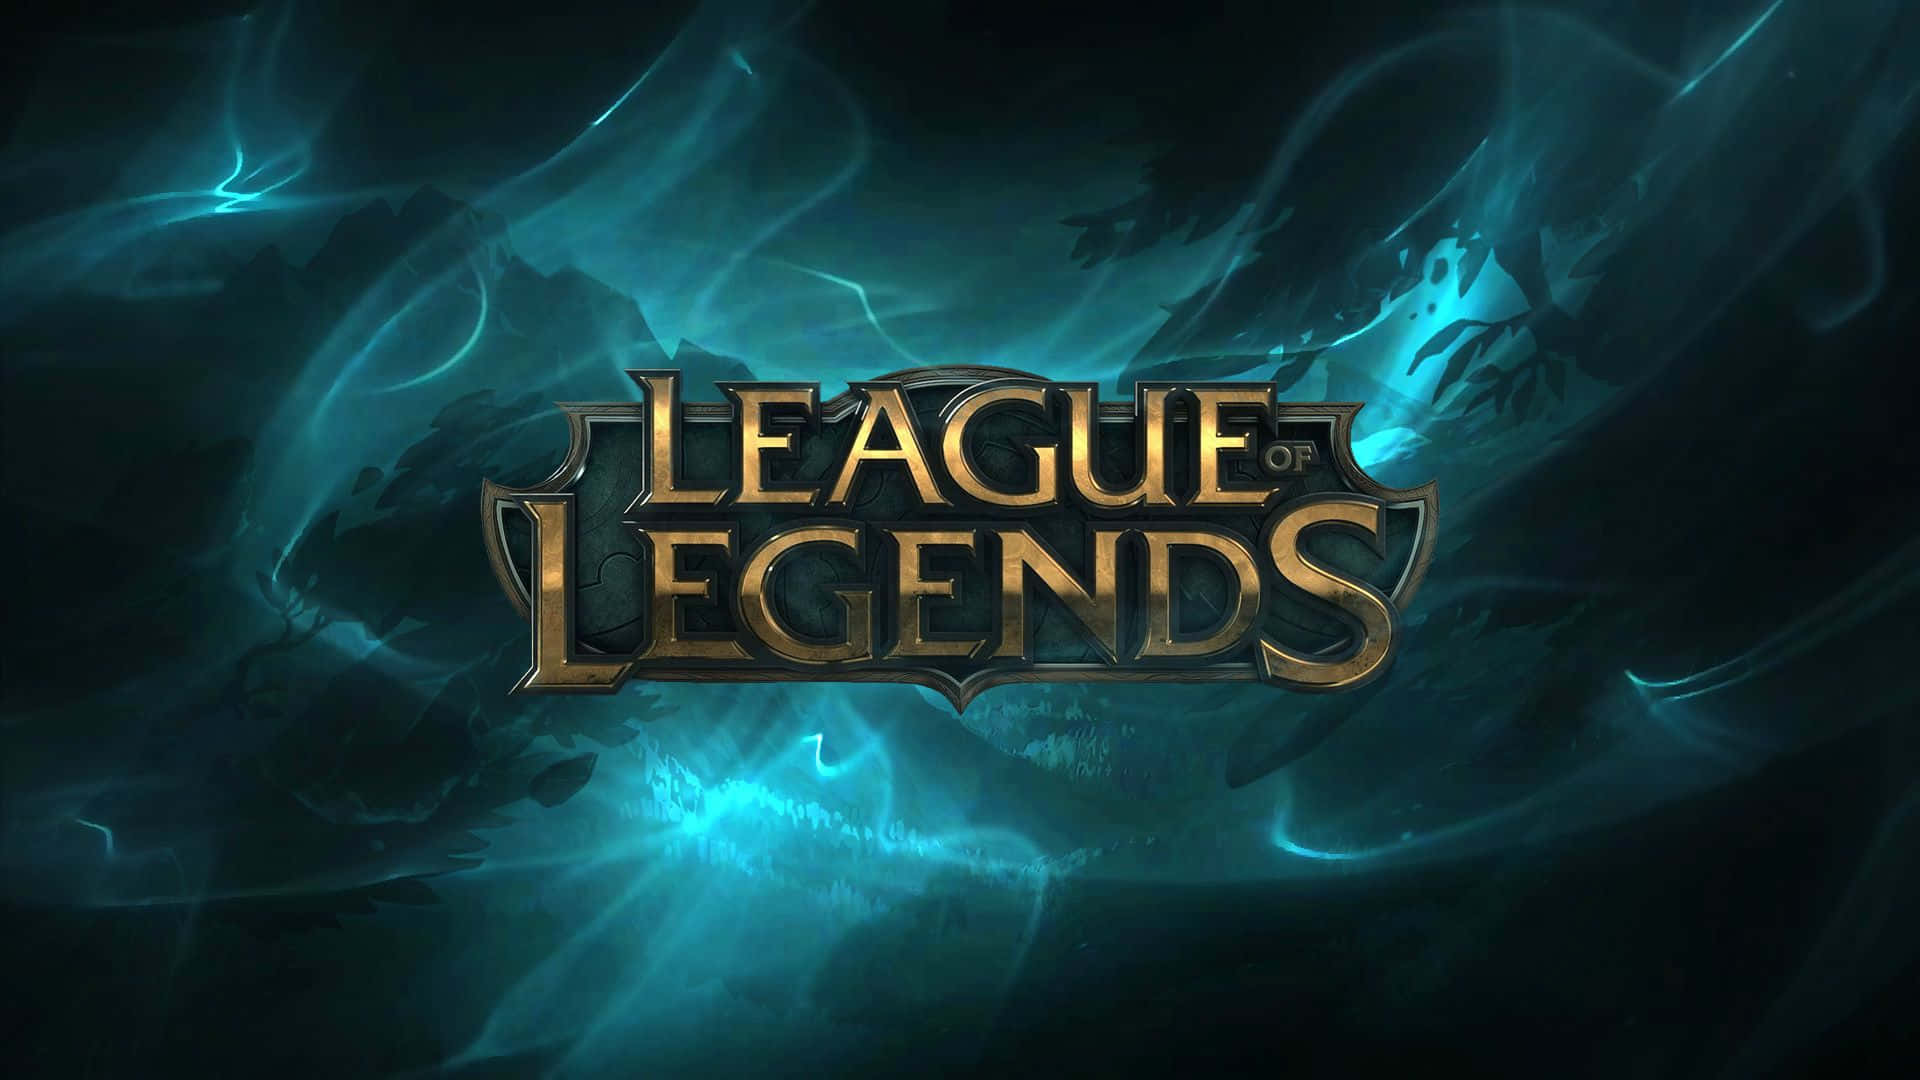 "League of Legends - Edgy Battleground Action Awaits!"